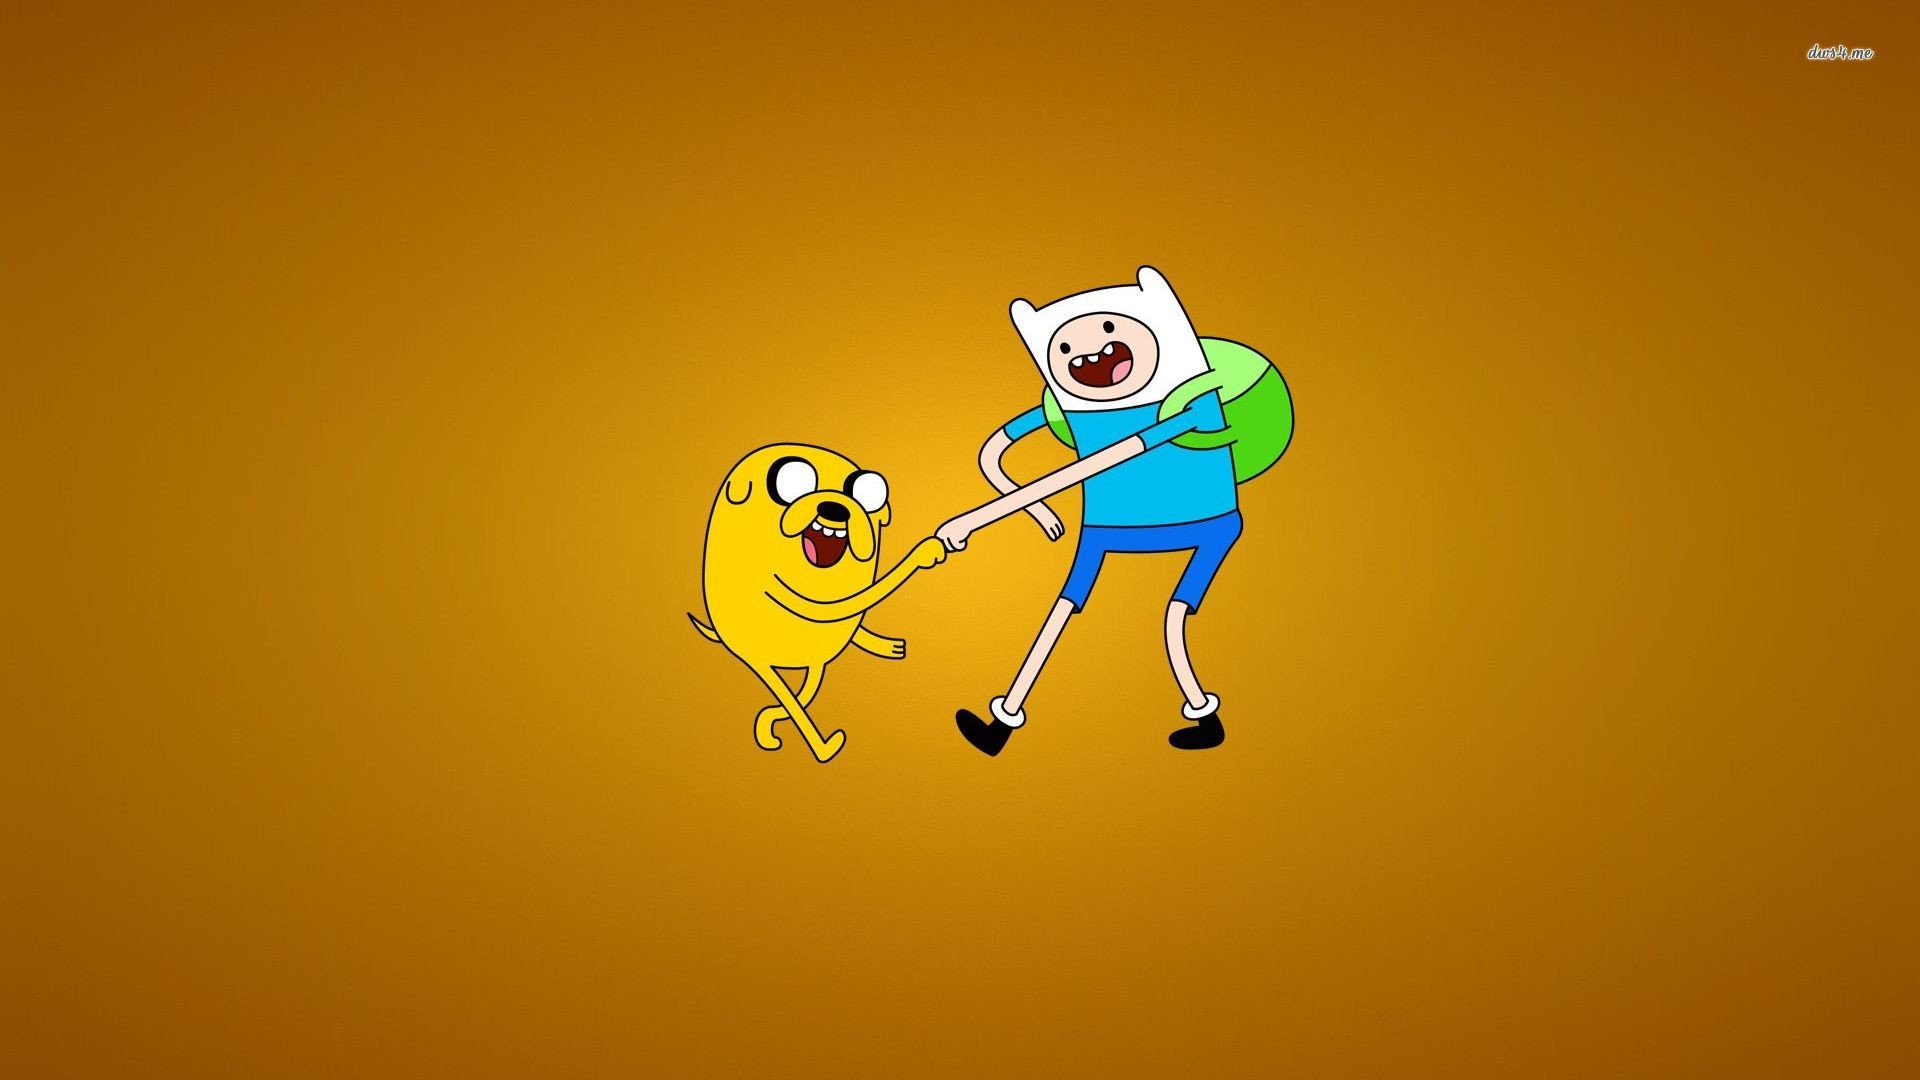 1920x1080 Adventure Time - Jake and Finn fist bumping wallpaper - Cartoon .